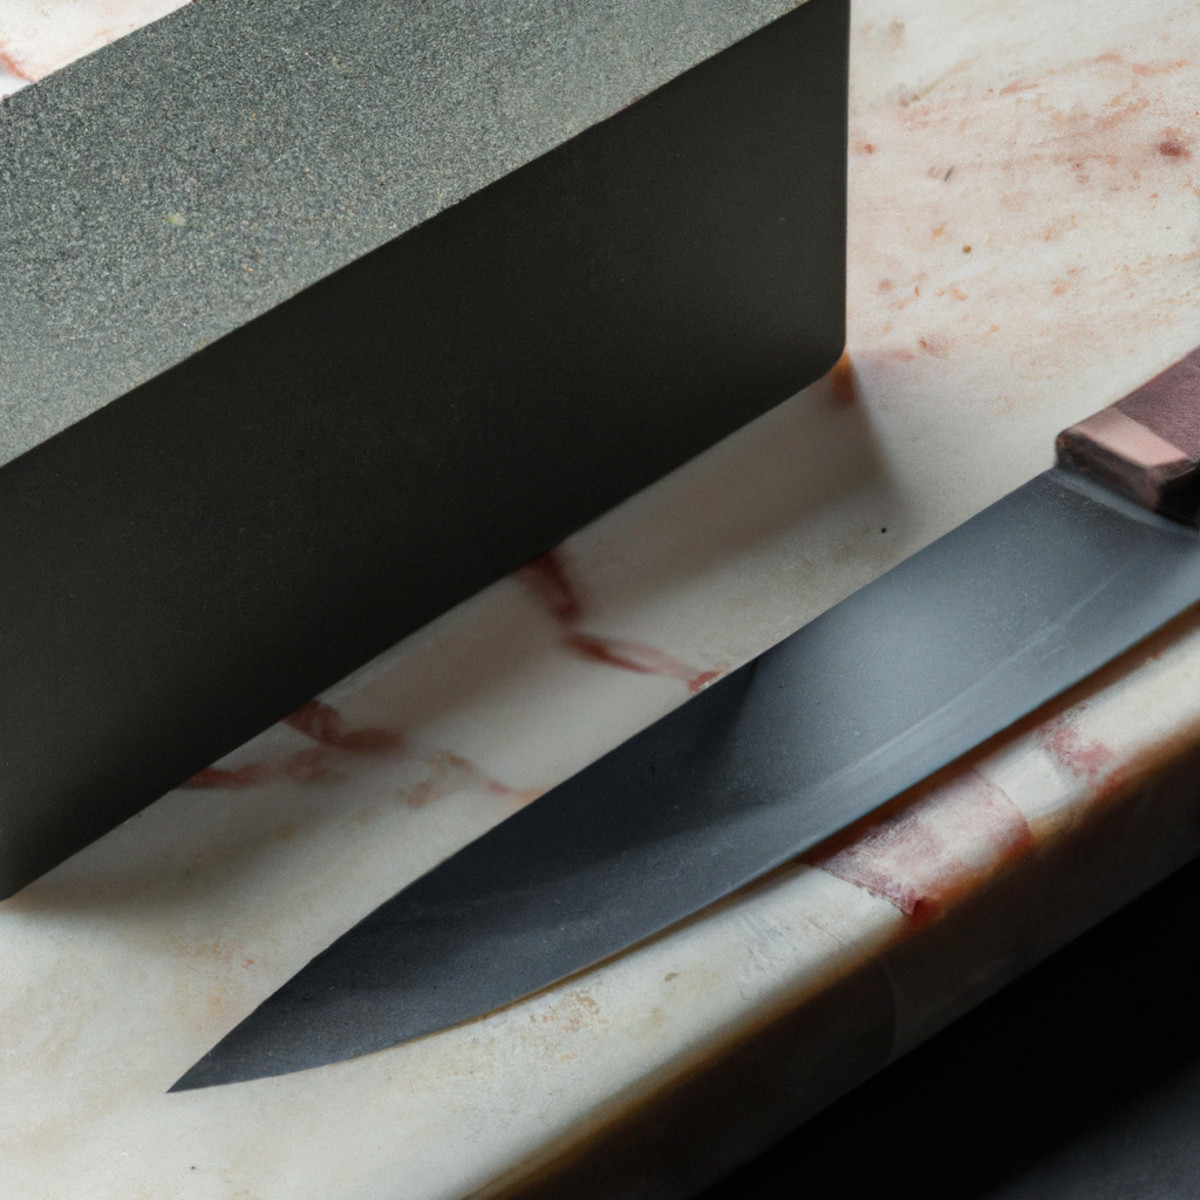 Filo de cuchillo biselado simple: usos, nitidez y durabilidad